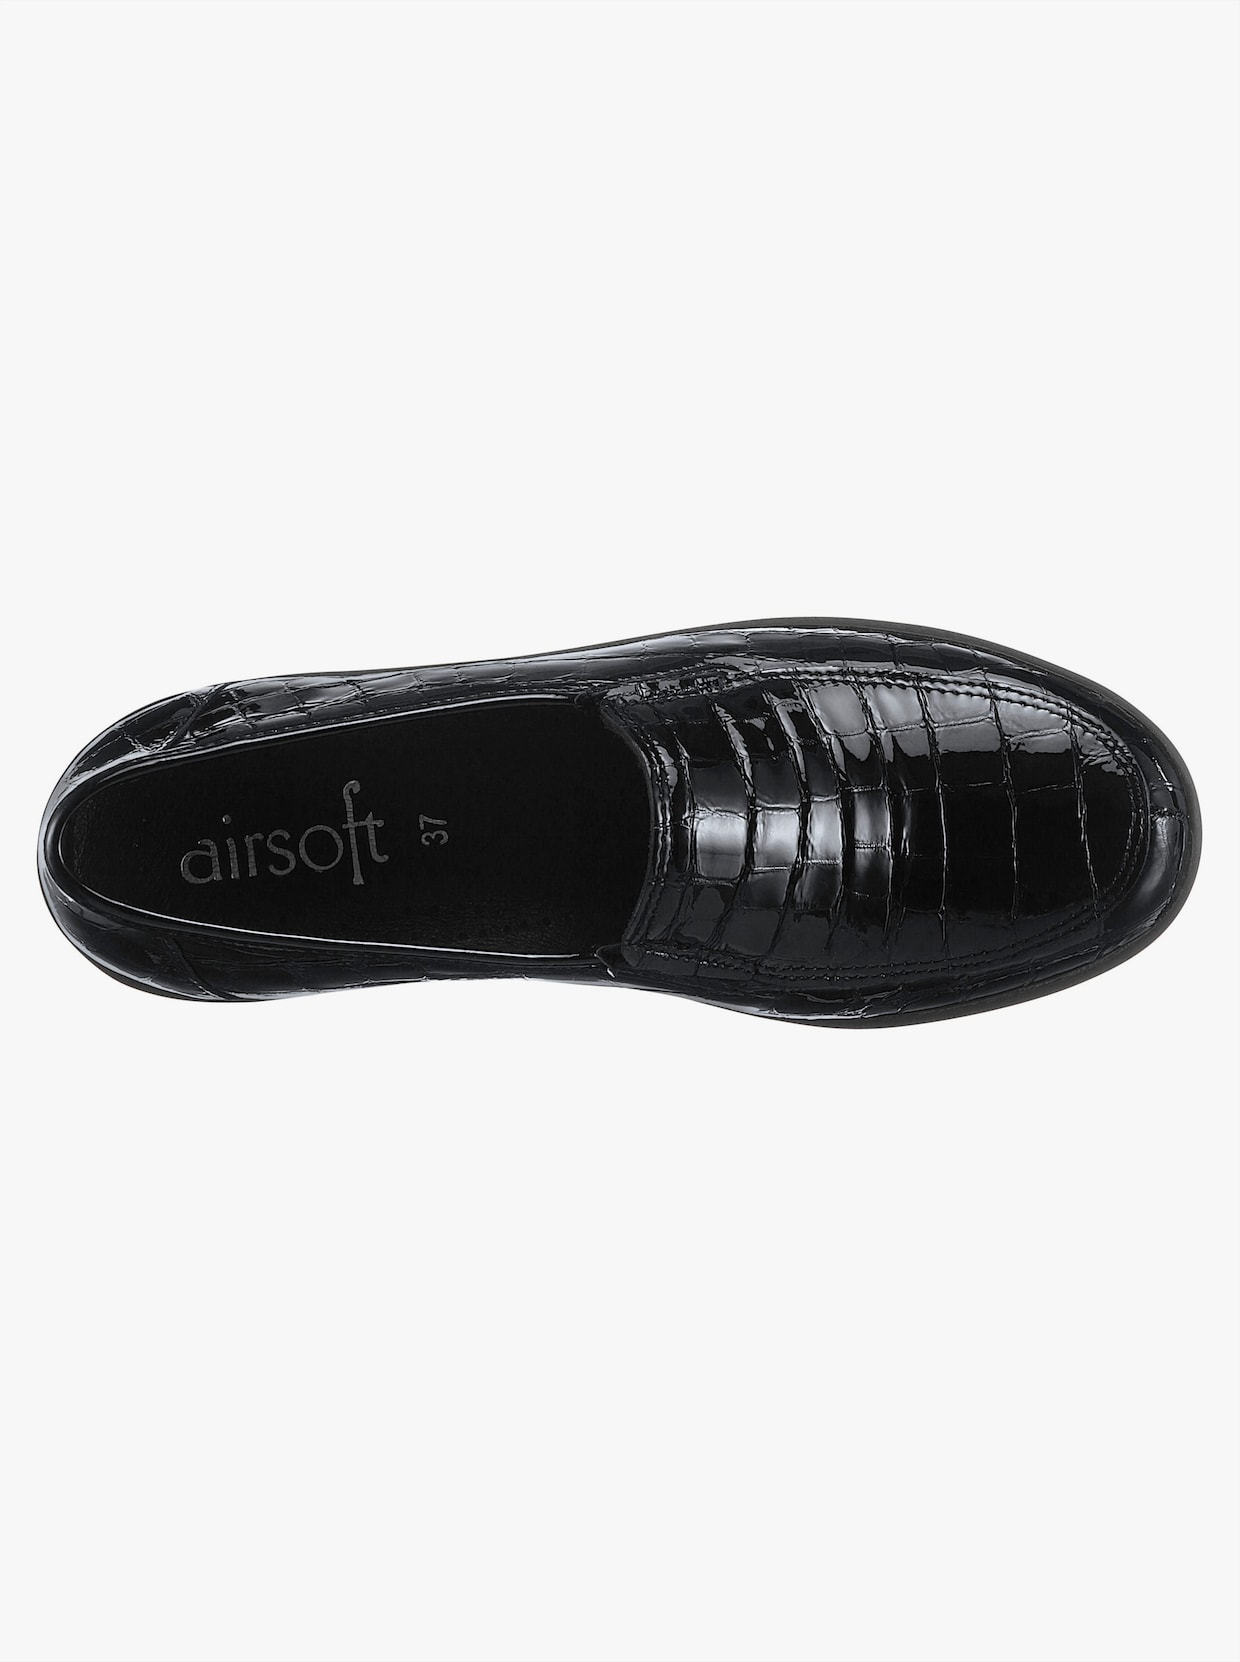 airsoft comfort+ Slipry - černá